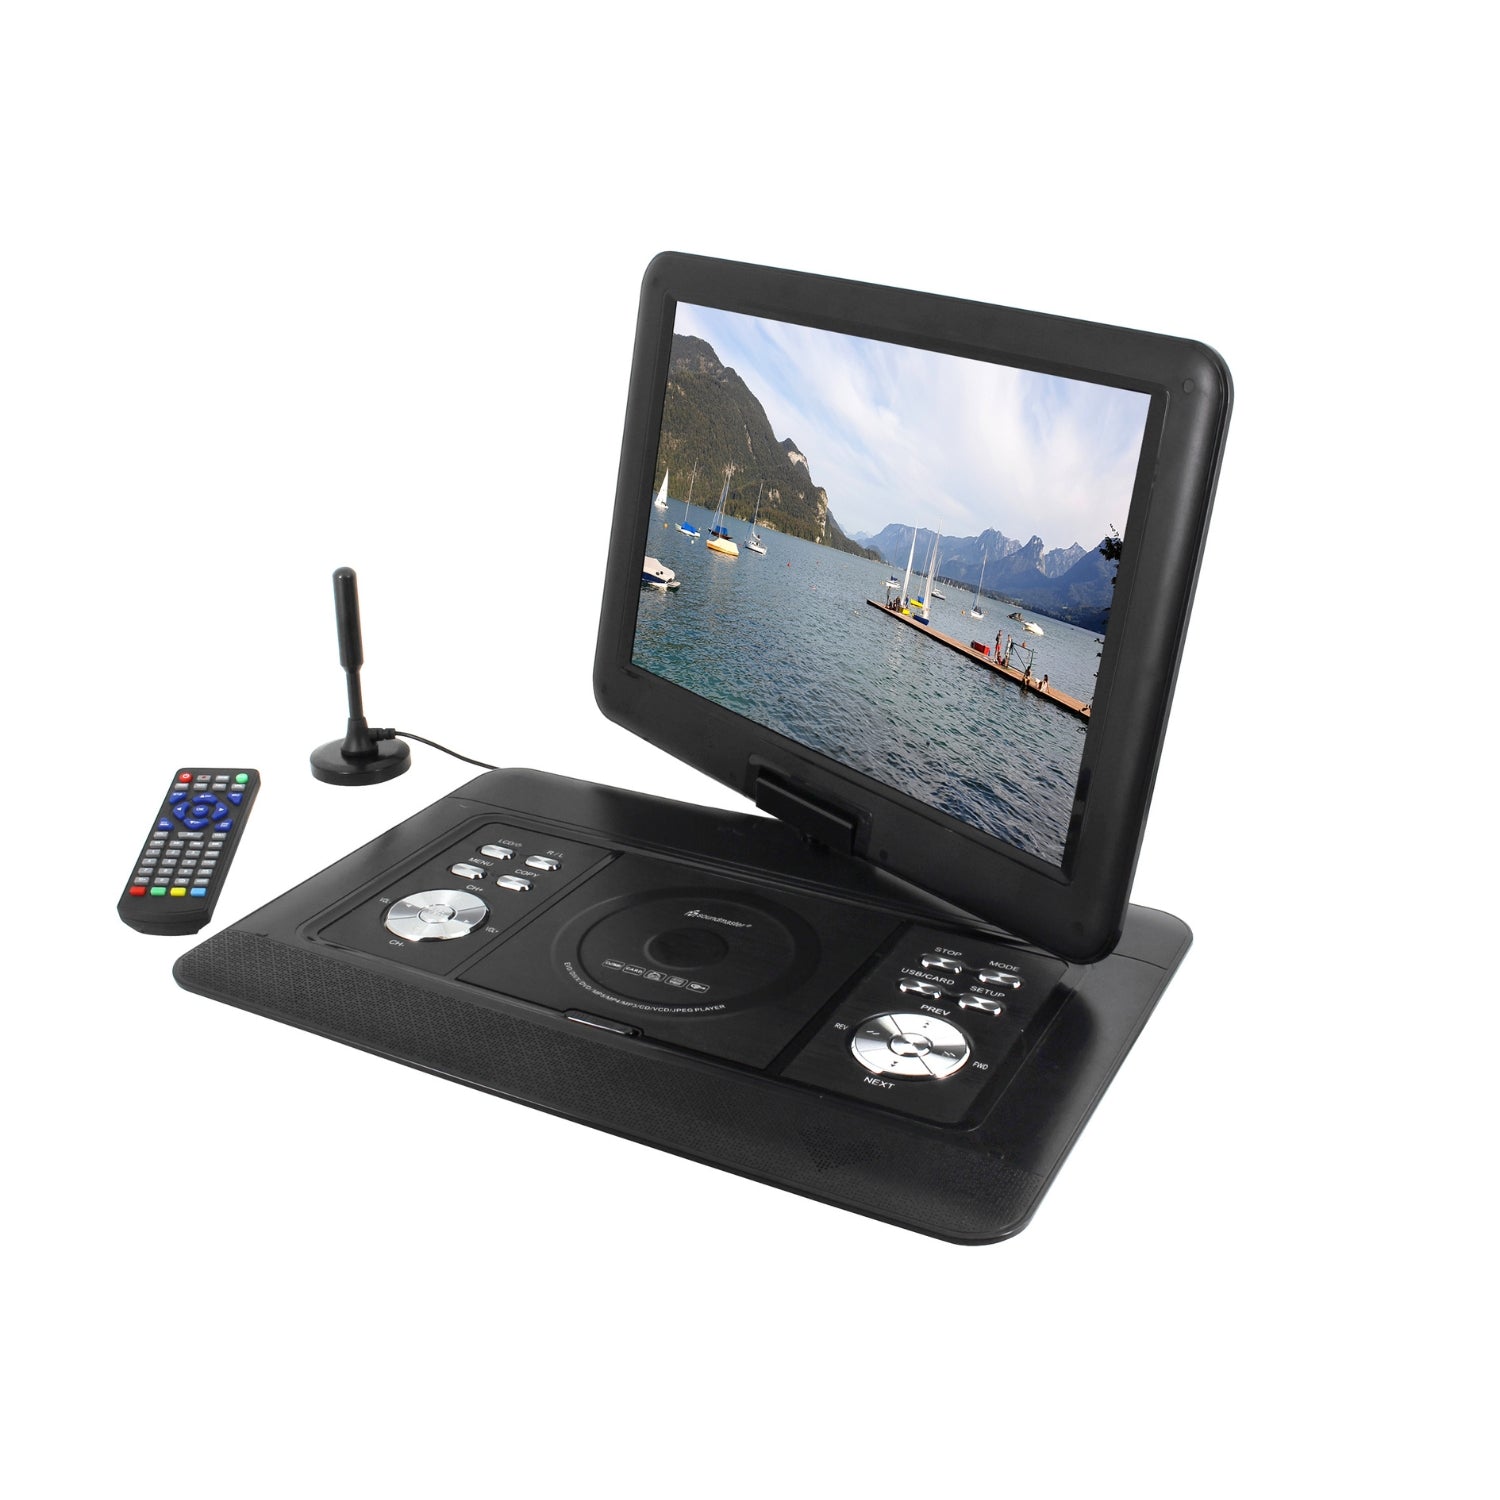 Soundmaster PDB1600SW tragbarer DVD-Player mit DVB-T2 HD-Tuner und 15.4" TFT Bildschirm inkl. 300 Spielen